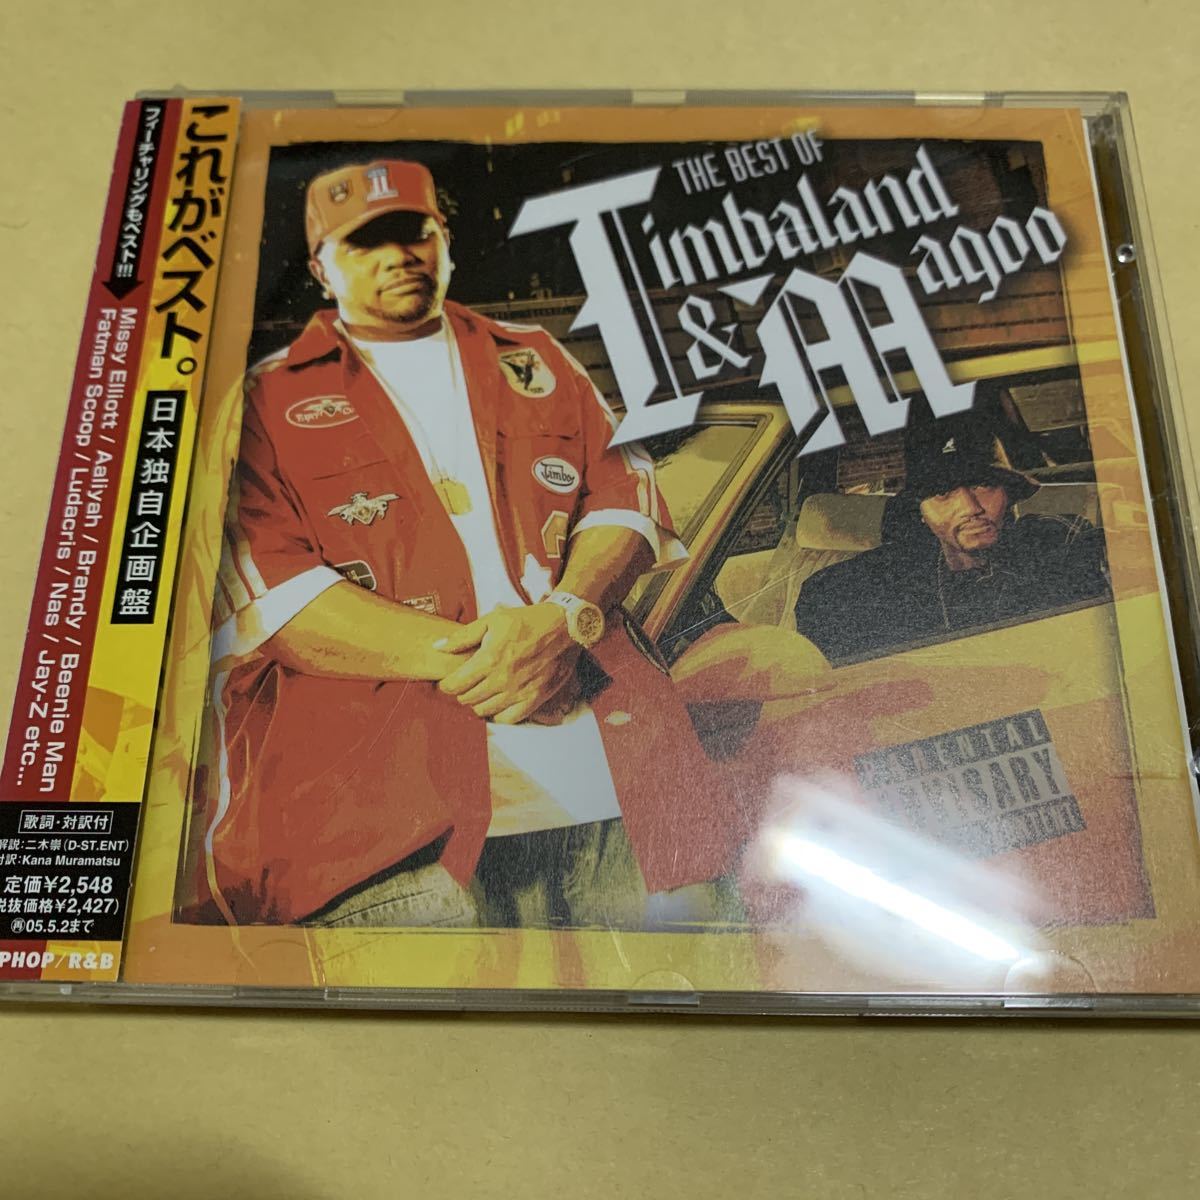 ☆帯付☆美品☆ ザ・ベスト・オブ・ティンバランド&マグー The Best of Timbaland & Magoo CD_画像1